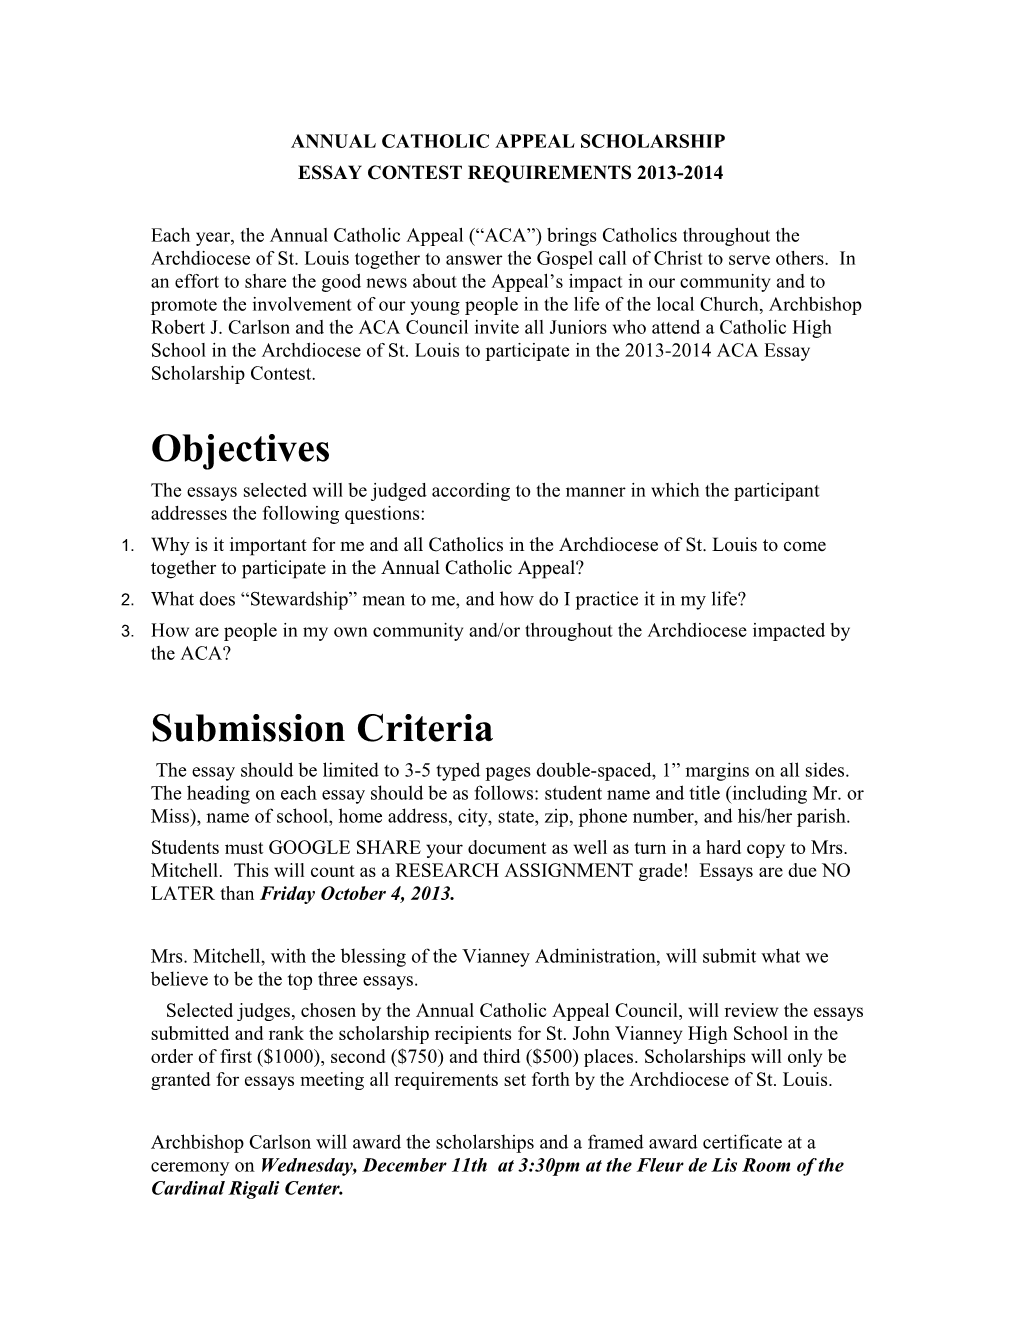 ACA Essay Requirements 2013